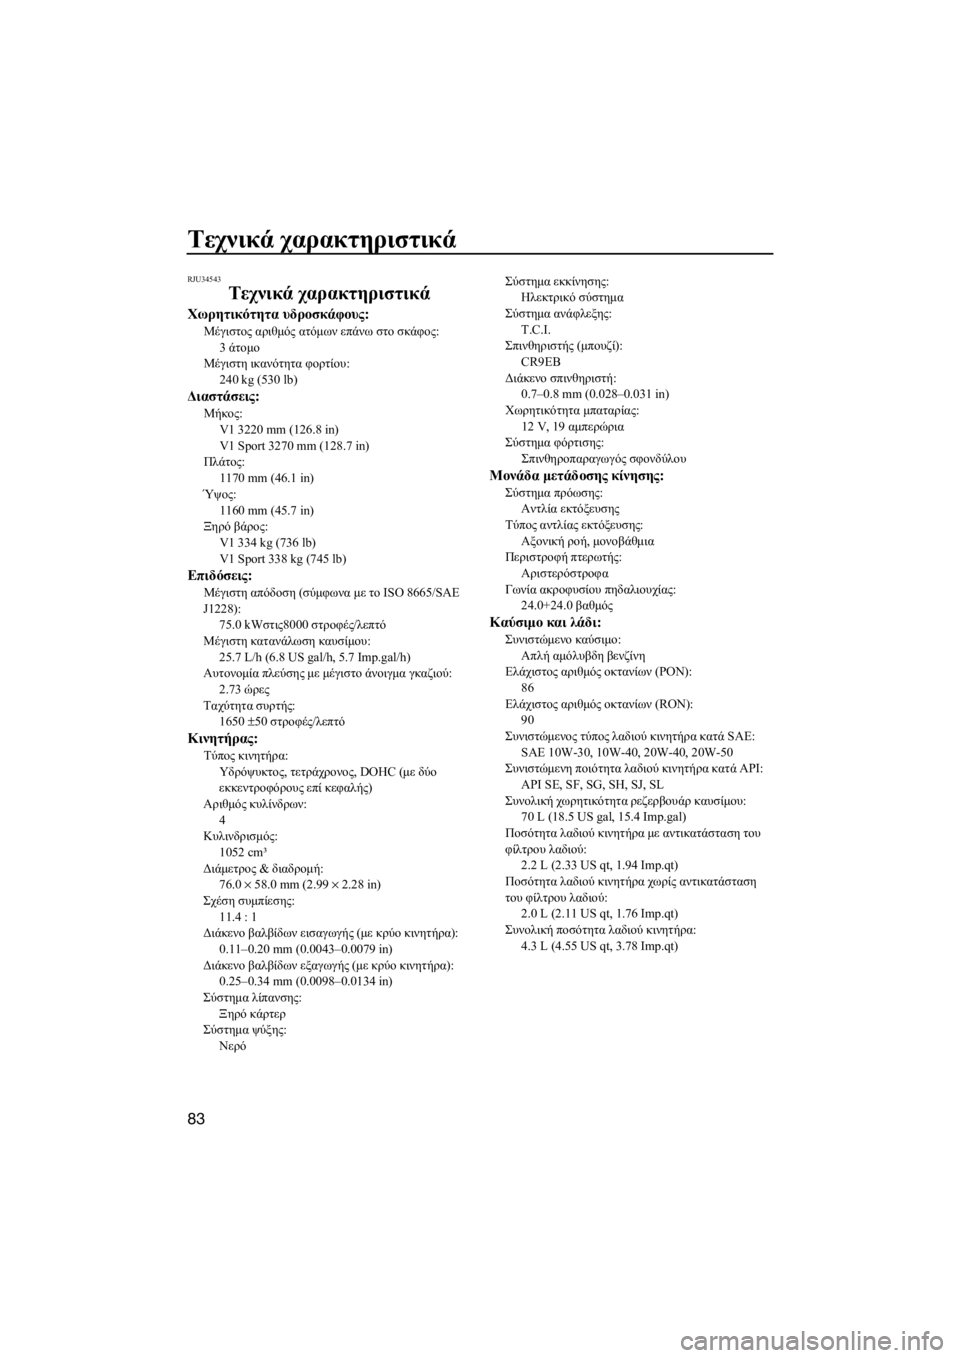 YAMAHA V1 SPORT 2015  ΟΔΗΓΌΣ ΧΡΉΣΗΣ (in Greek) Τεχνικά χαρακτηριστικά
83
RJU34543
Τεχνικά χαρακτηριστικά
Χωρητικότητα υδροσκάφους:
Μέγιστος αριθμός ατόμων επά